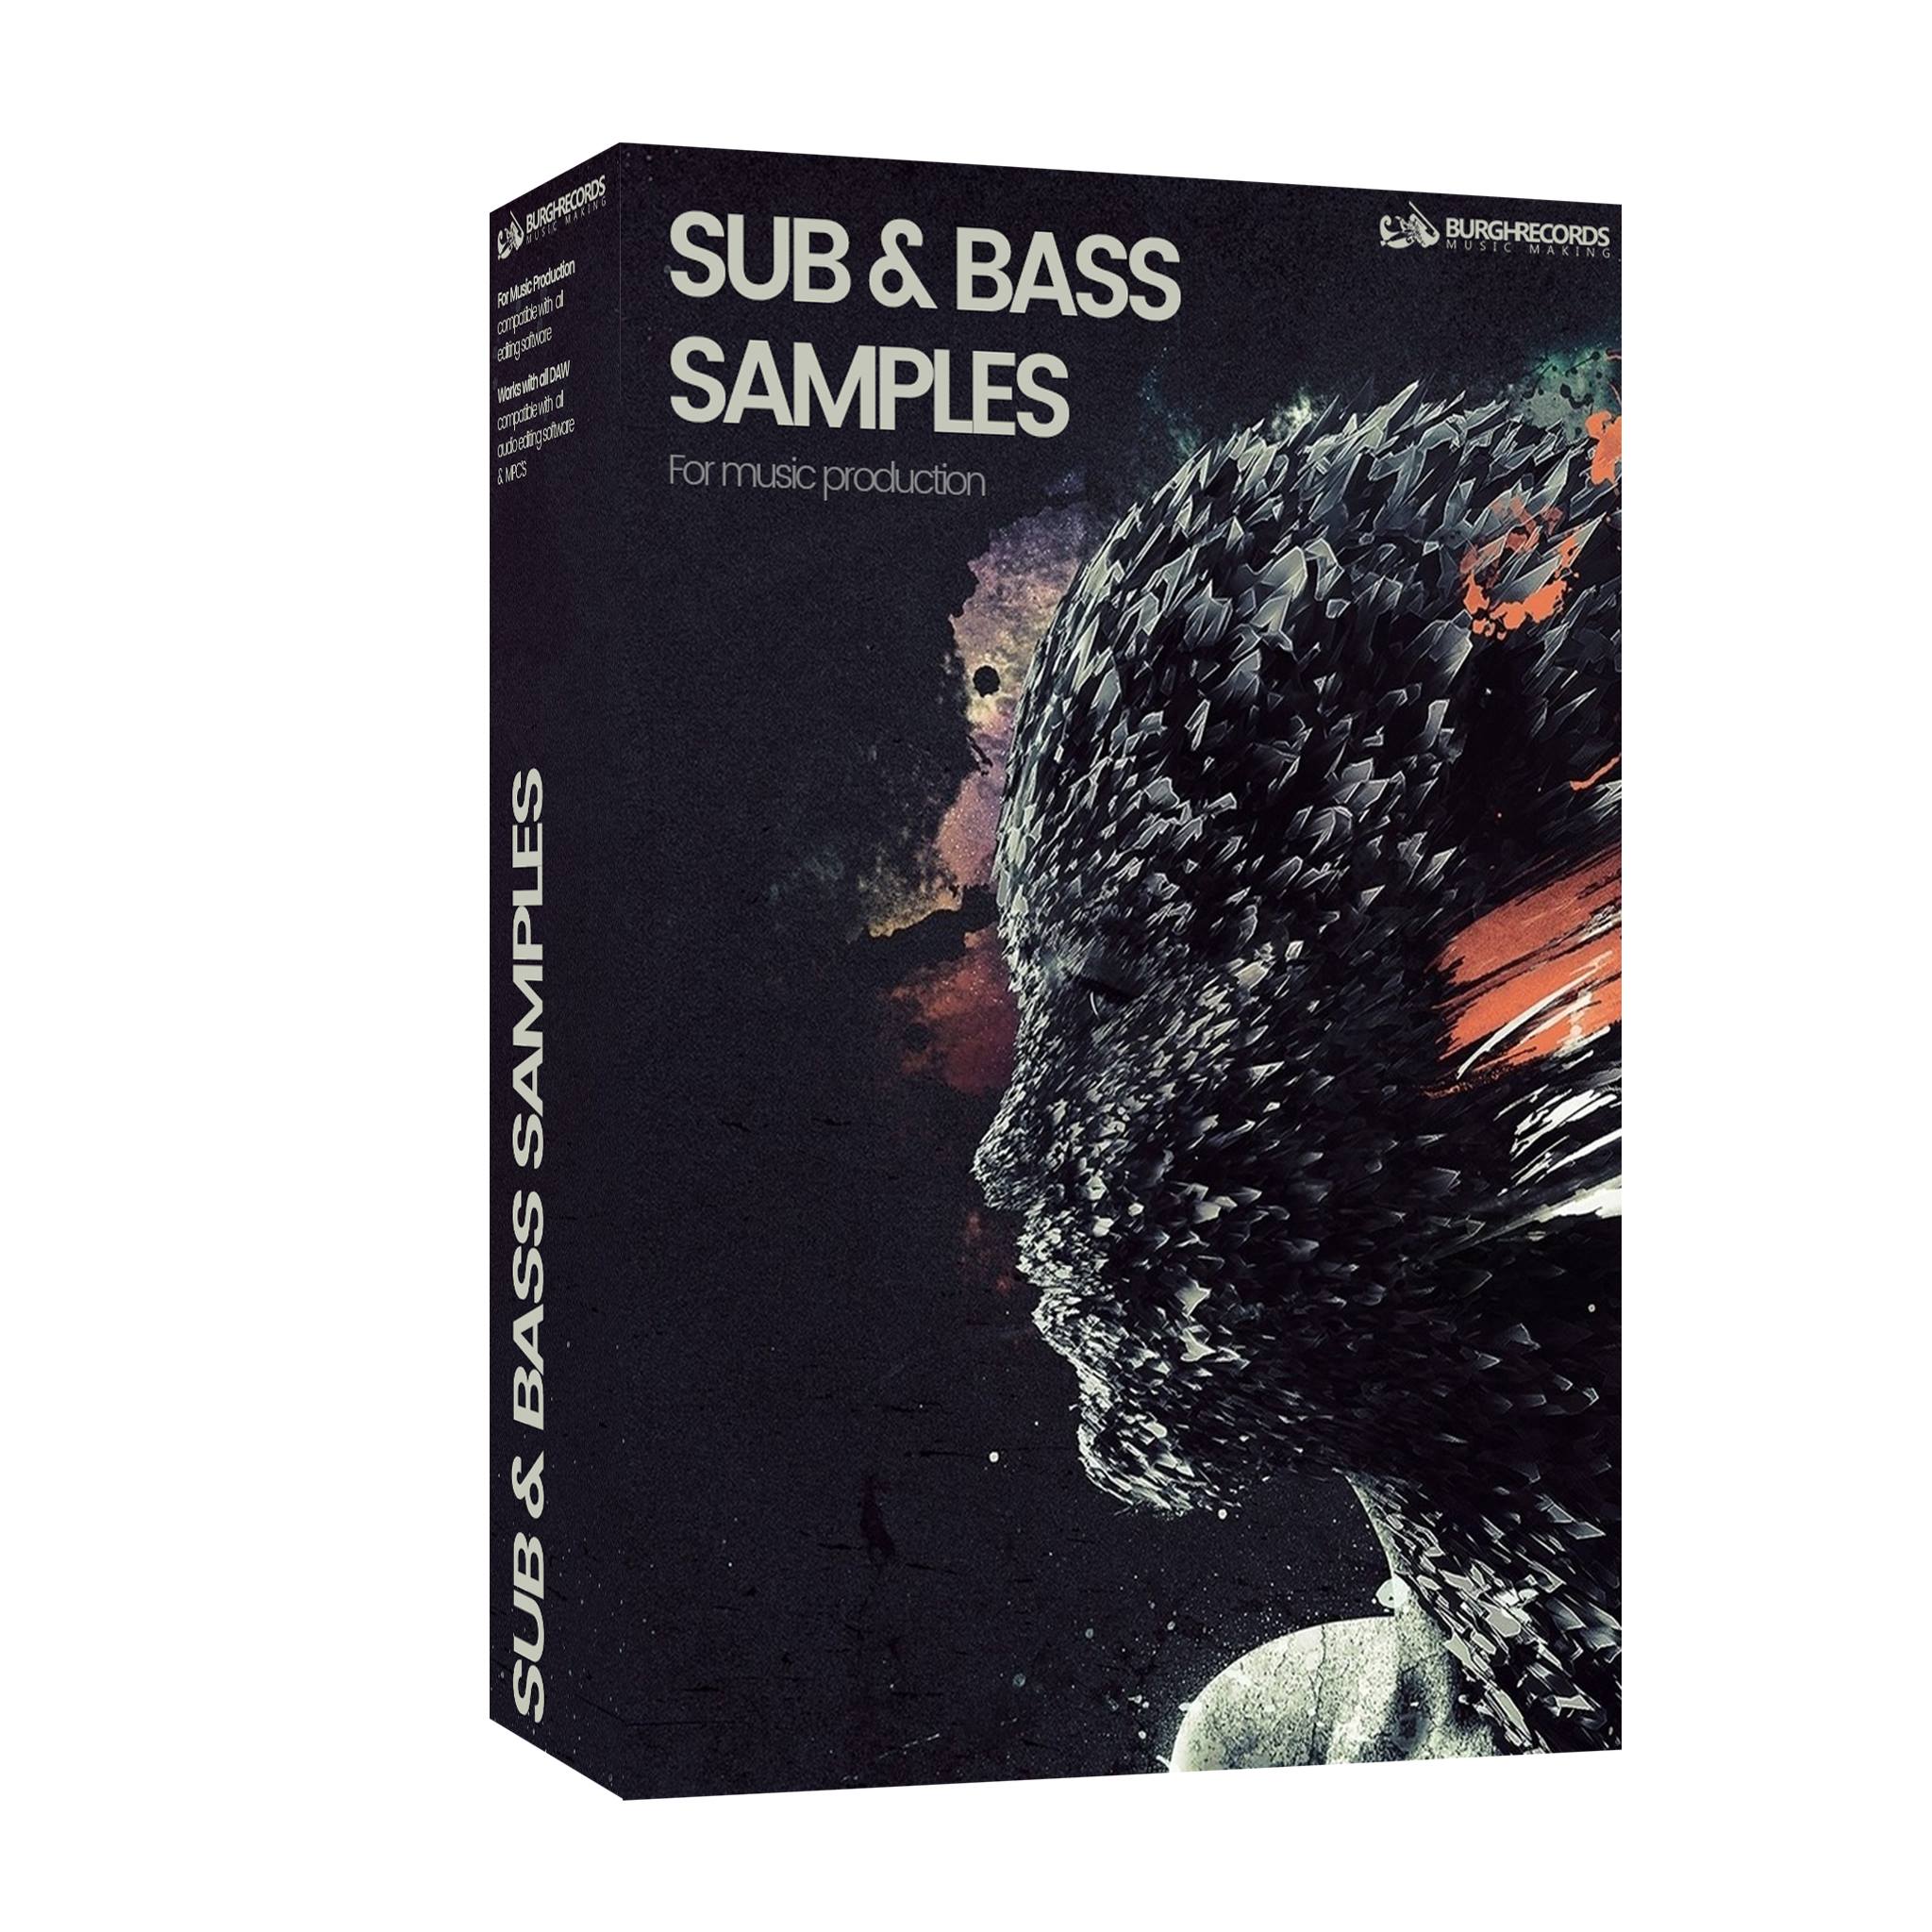 Bass sample downloads